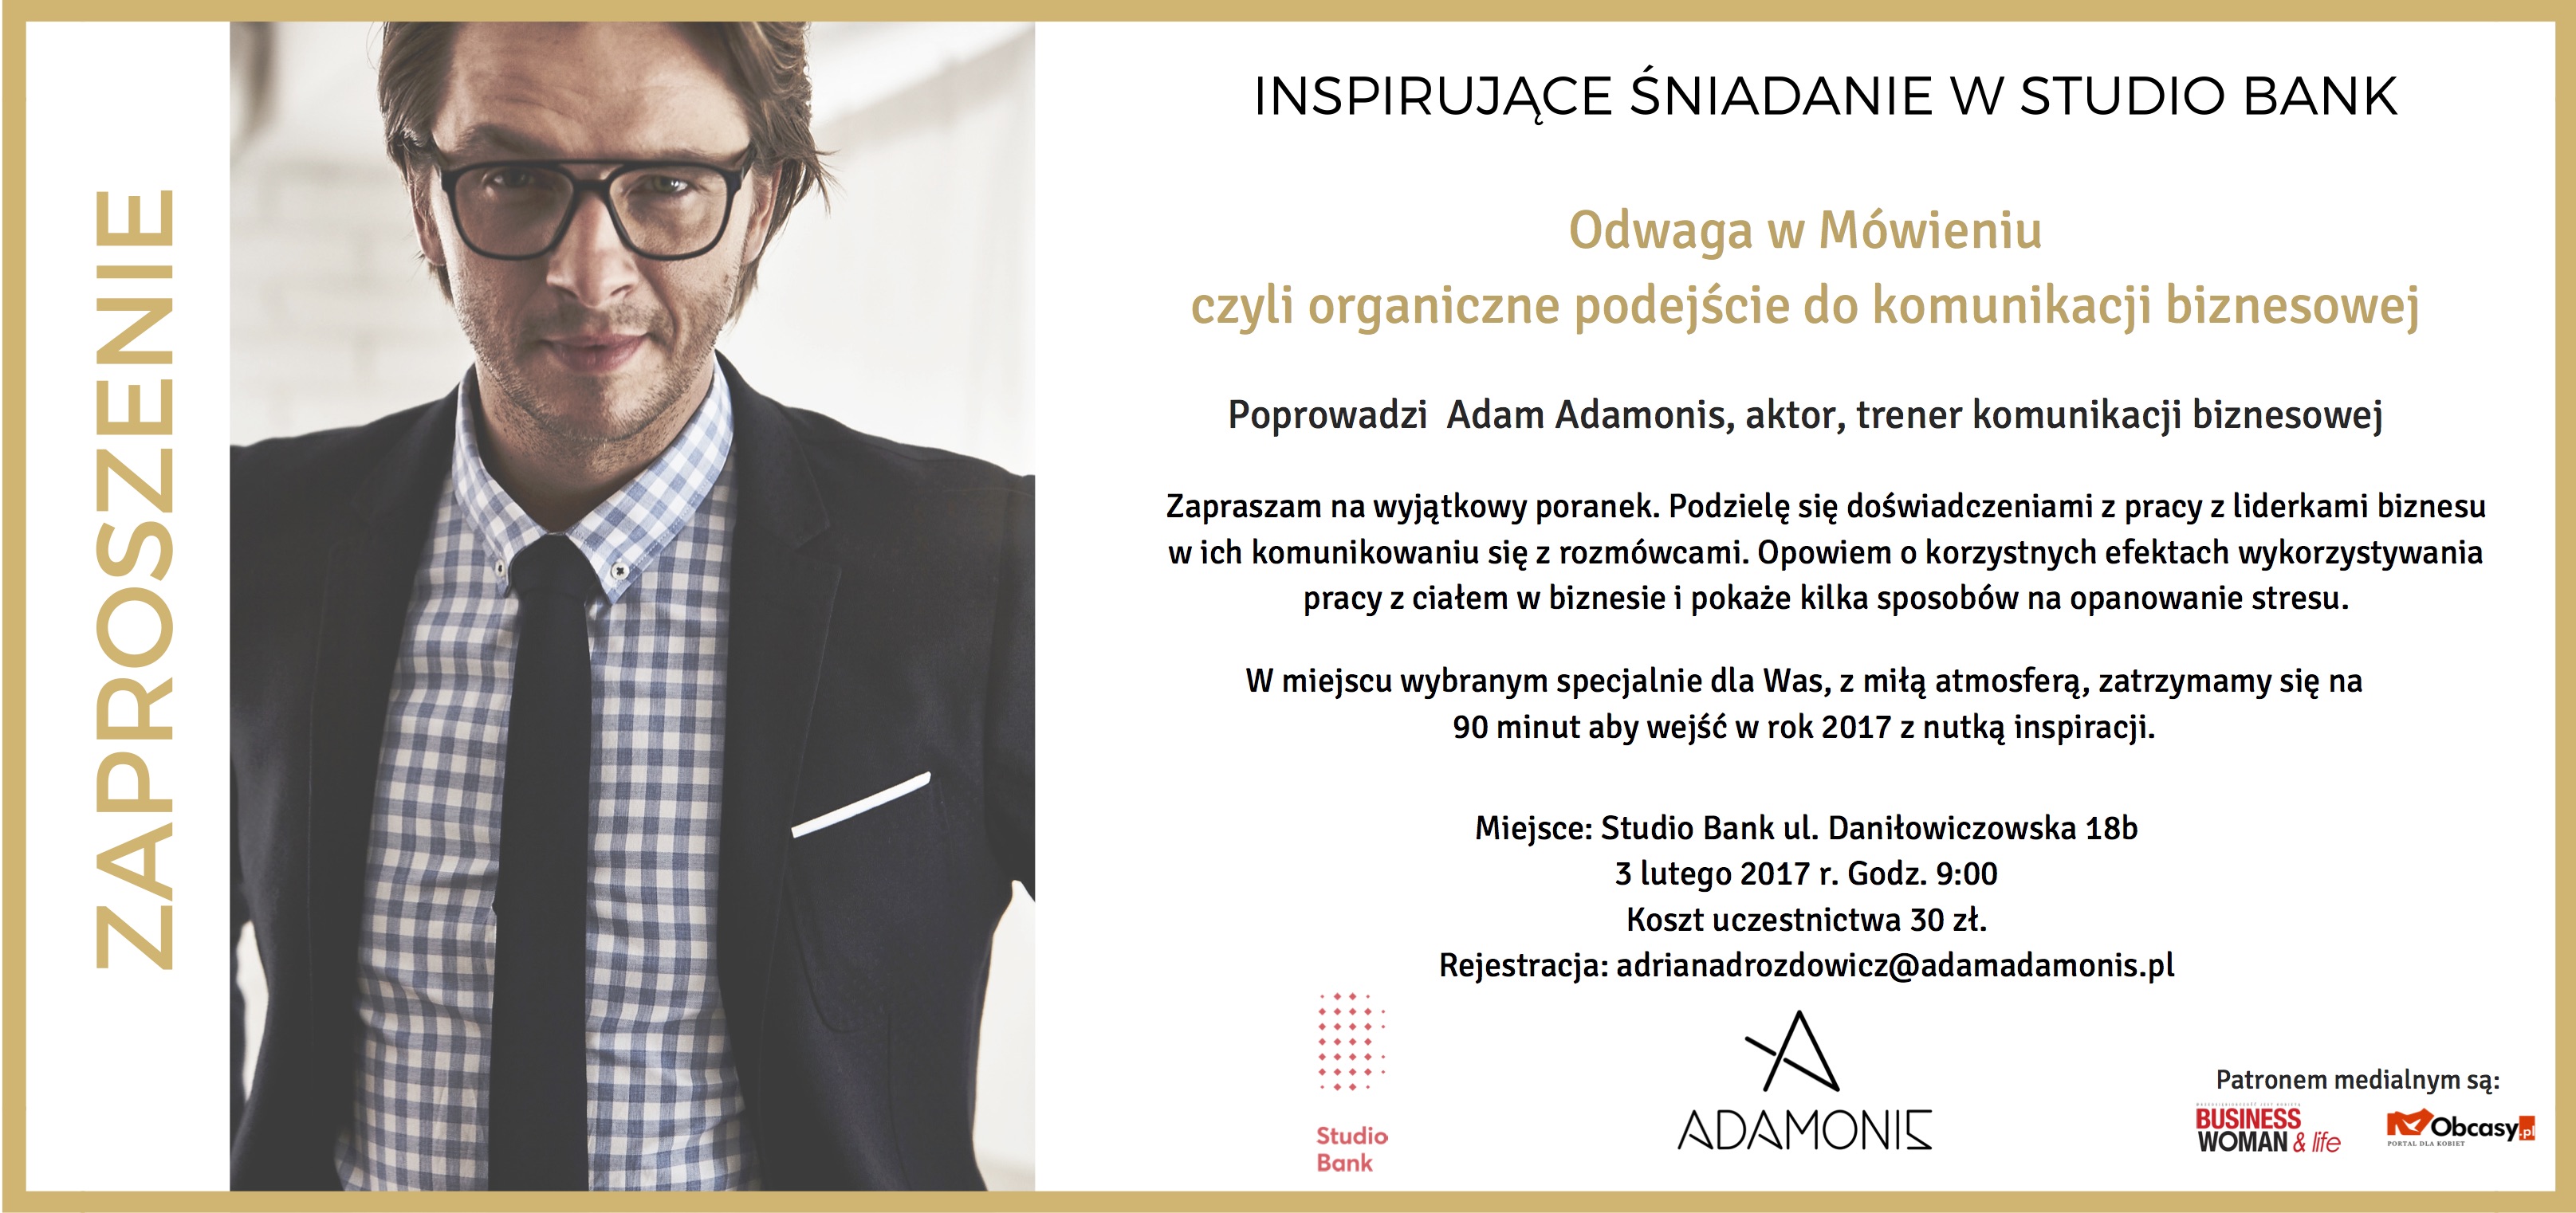 Zaproszenie na inspirujące śniadanie Adama Adamonisa w Studio Bank